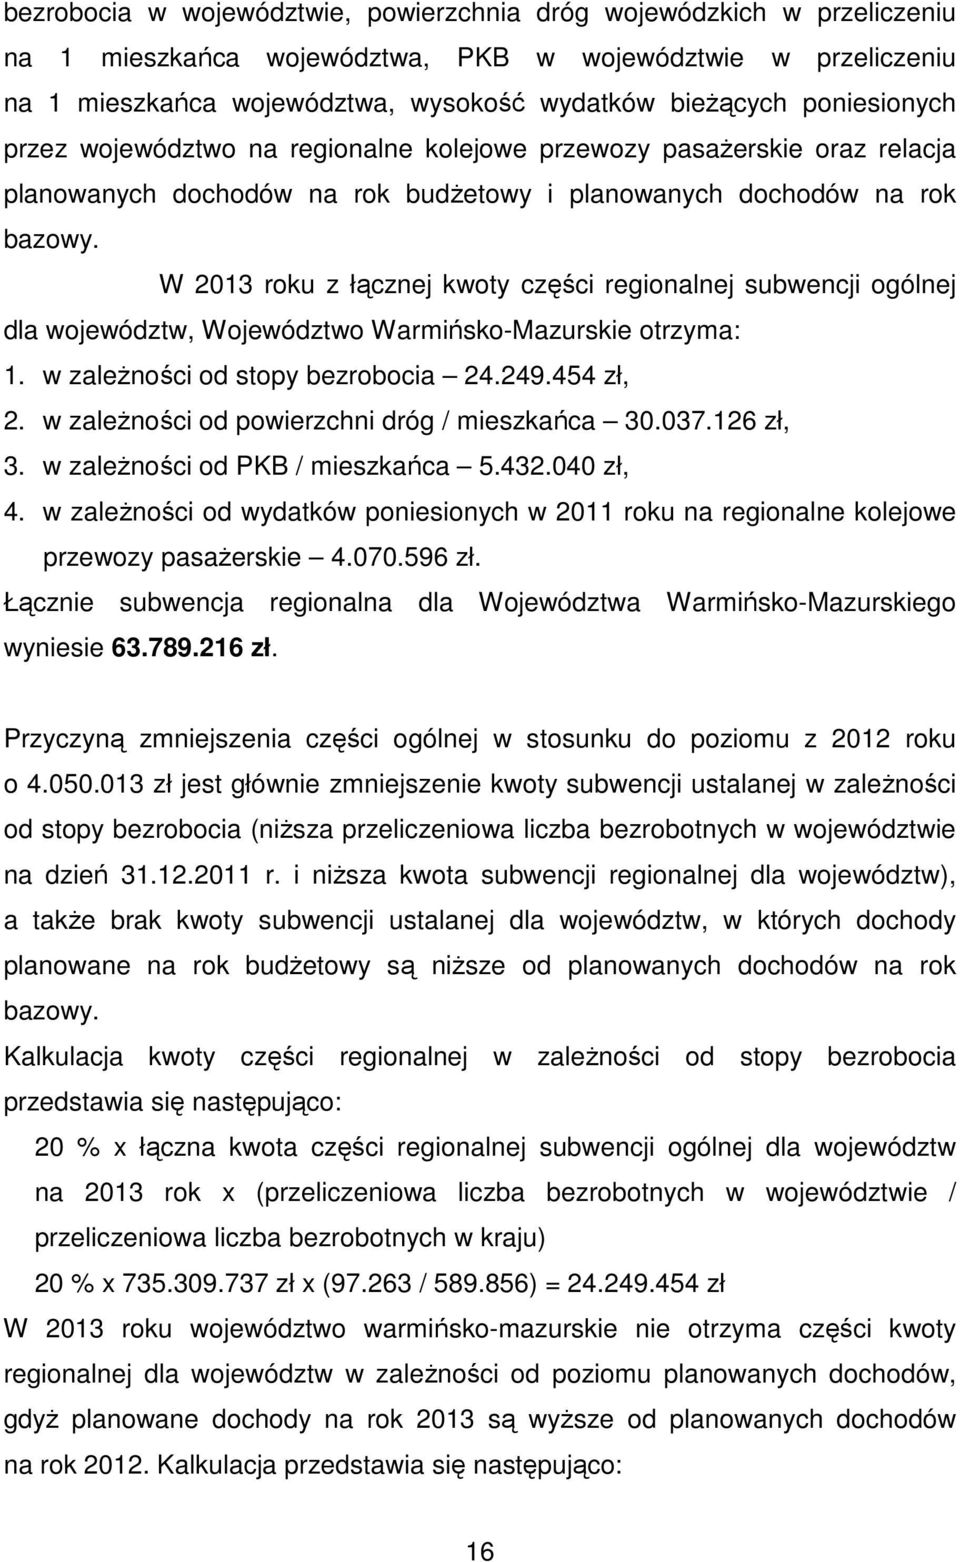 W 2013 roku z łącznej kwoty części regionalnej subwencji ogólnej dla województw, Województwo Warmińsko-Mazurskie otrzyma: 1. w zależności od stopy bezrobocia 24.249.454 zł, 2.